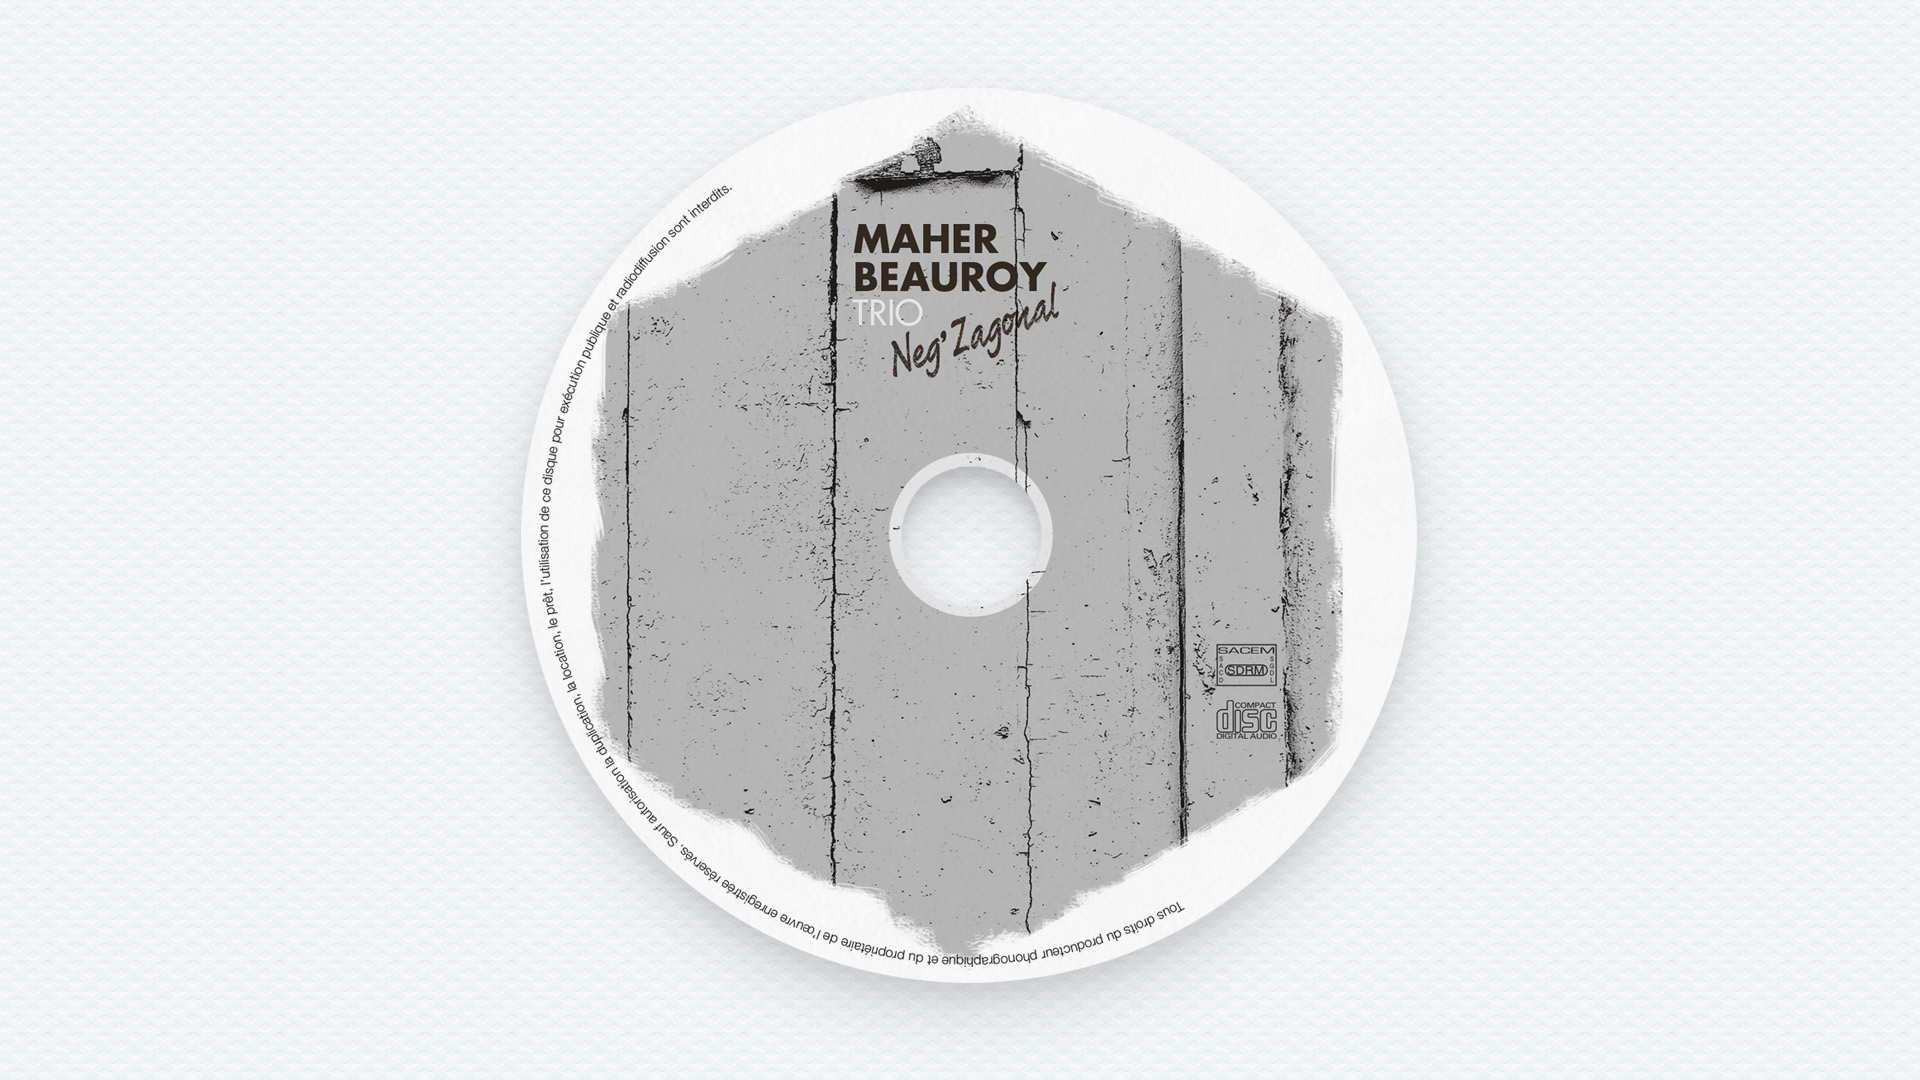 cover album Jazz Maher Beauroy - Neg'zagonal